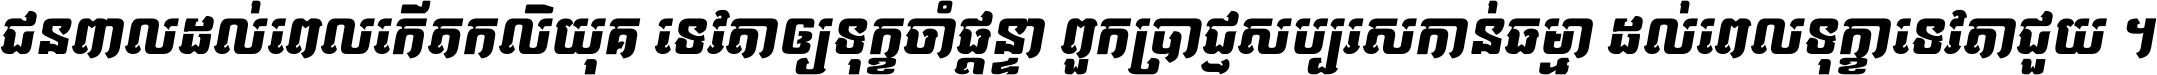 Kh Baphnom 042 Vatey Italic